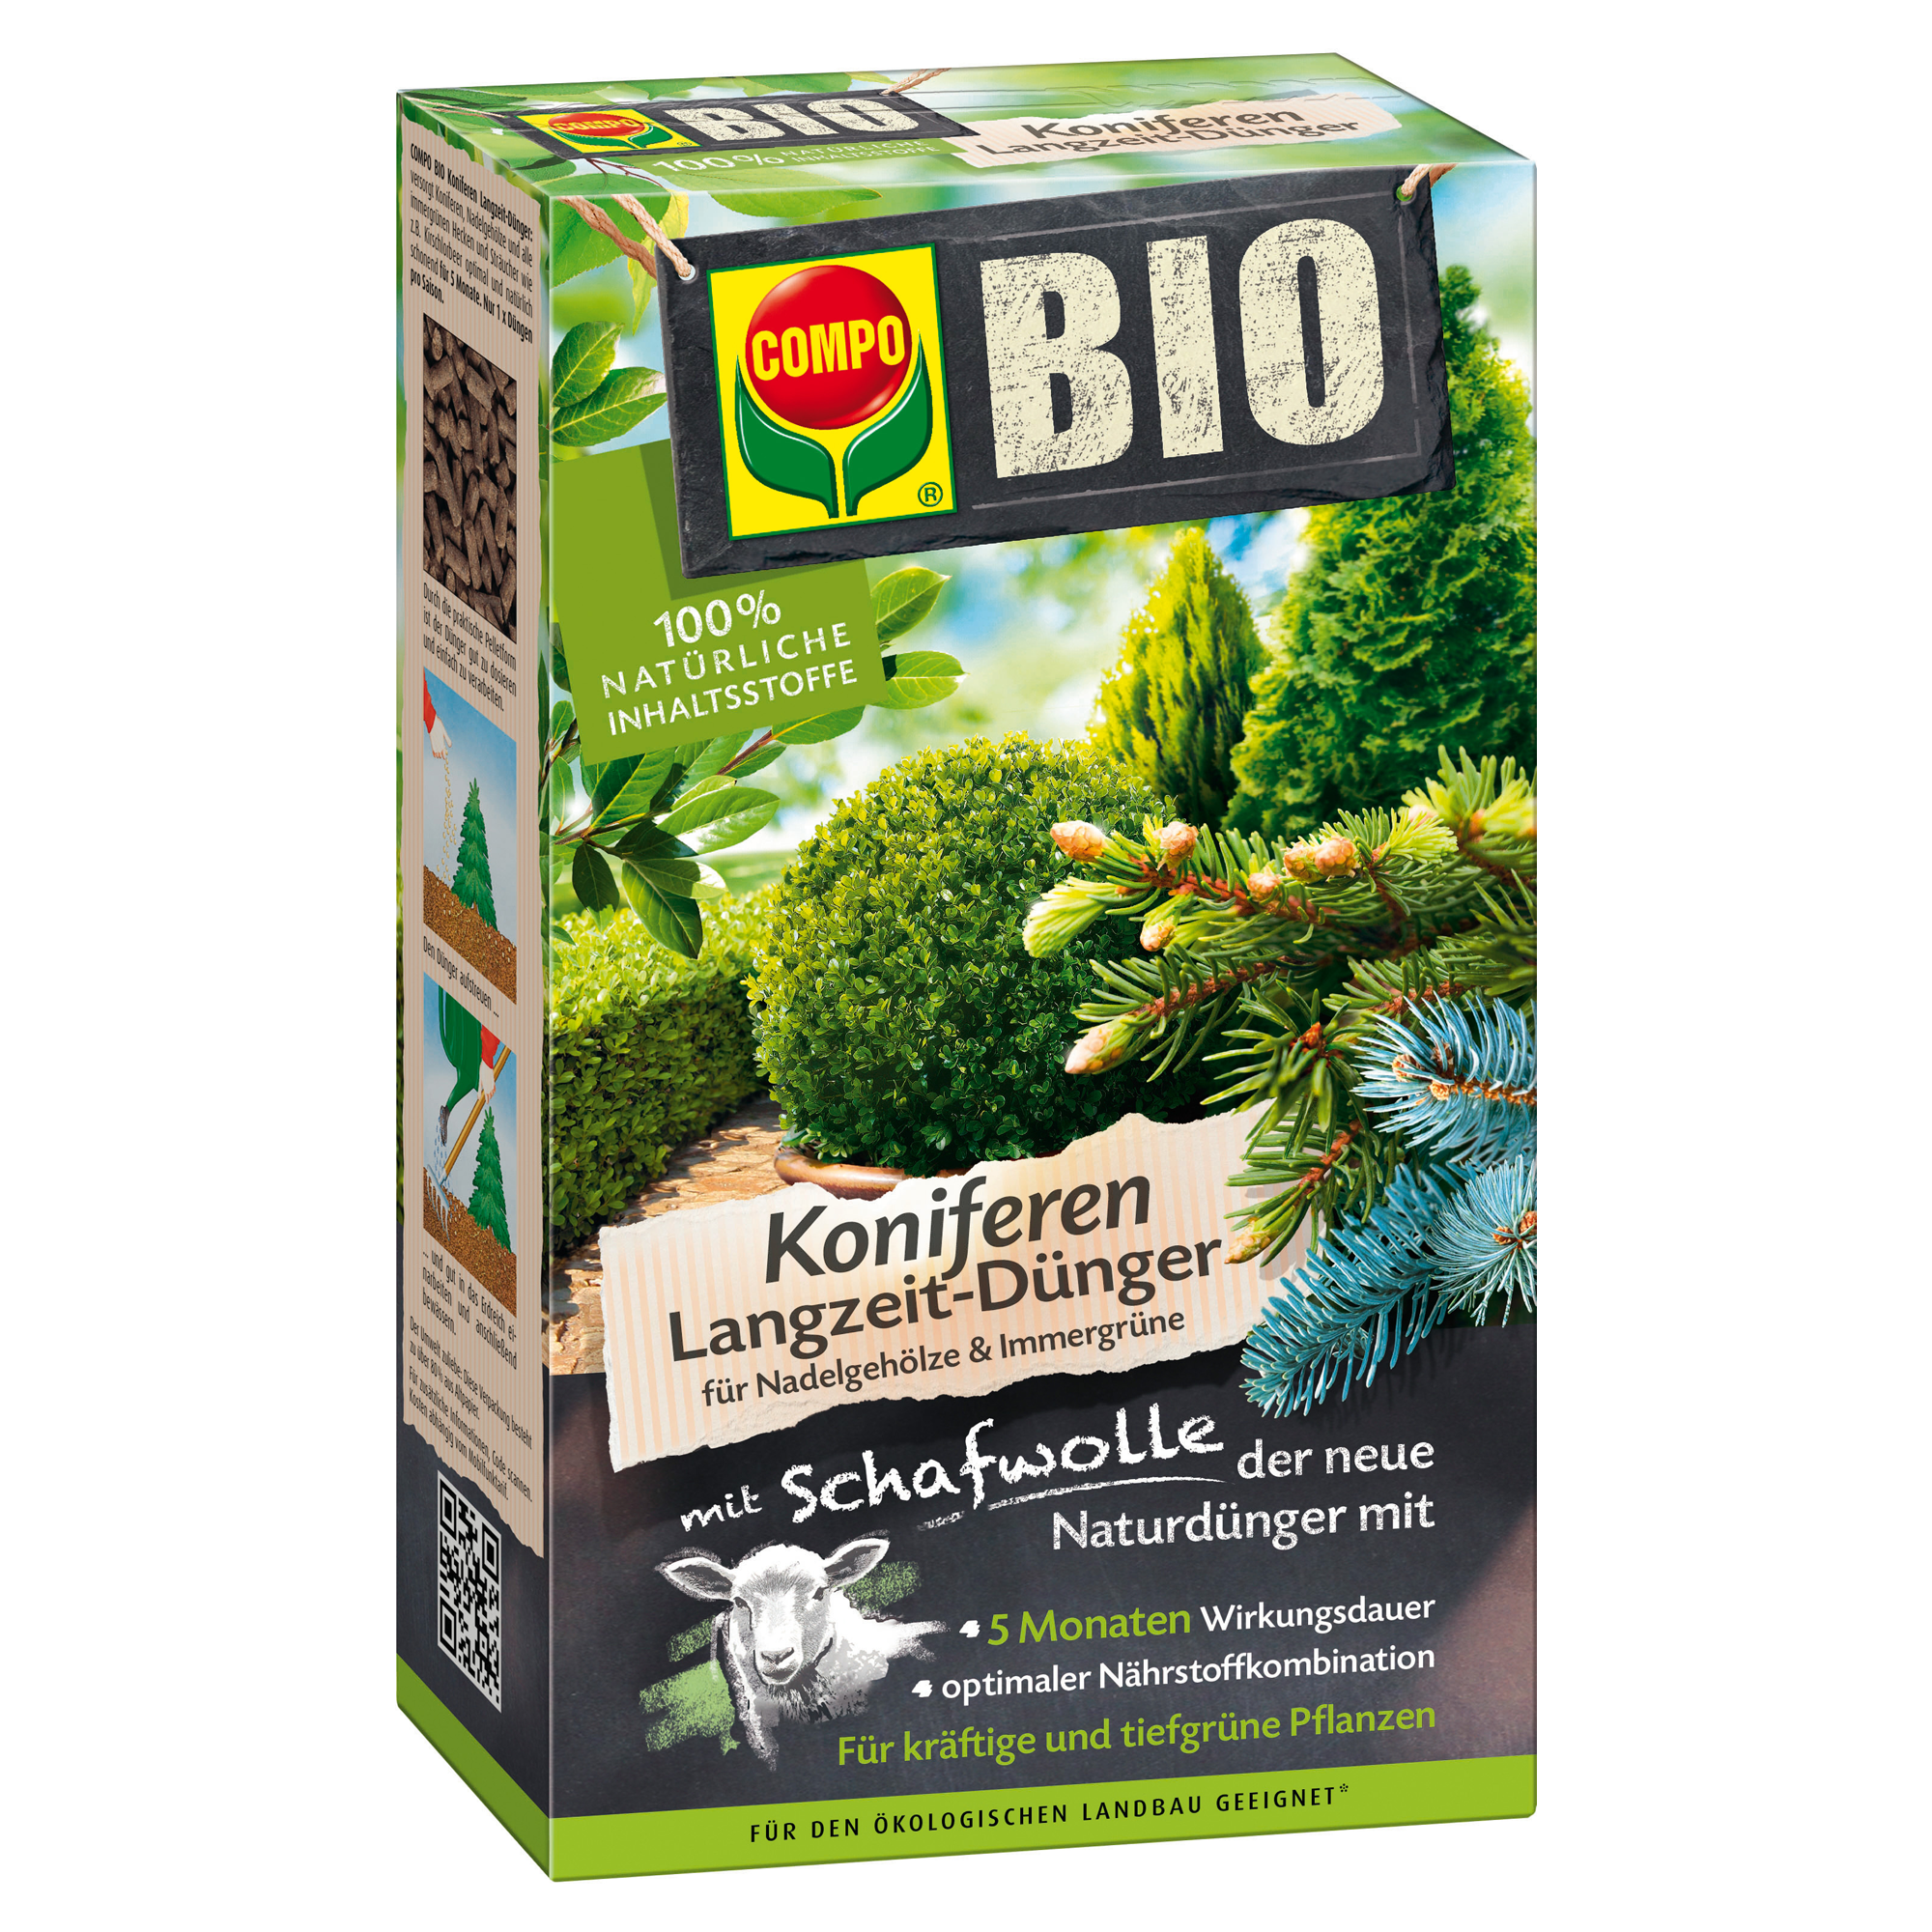 Bio-Langzeitdünger mit Schafwolle Koniferen 750 g + product picture